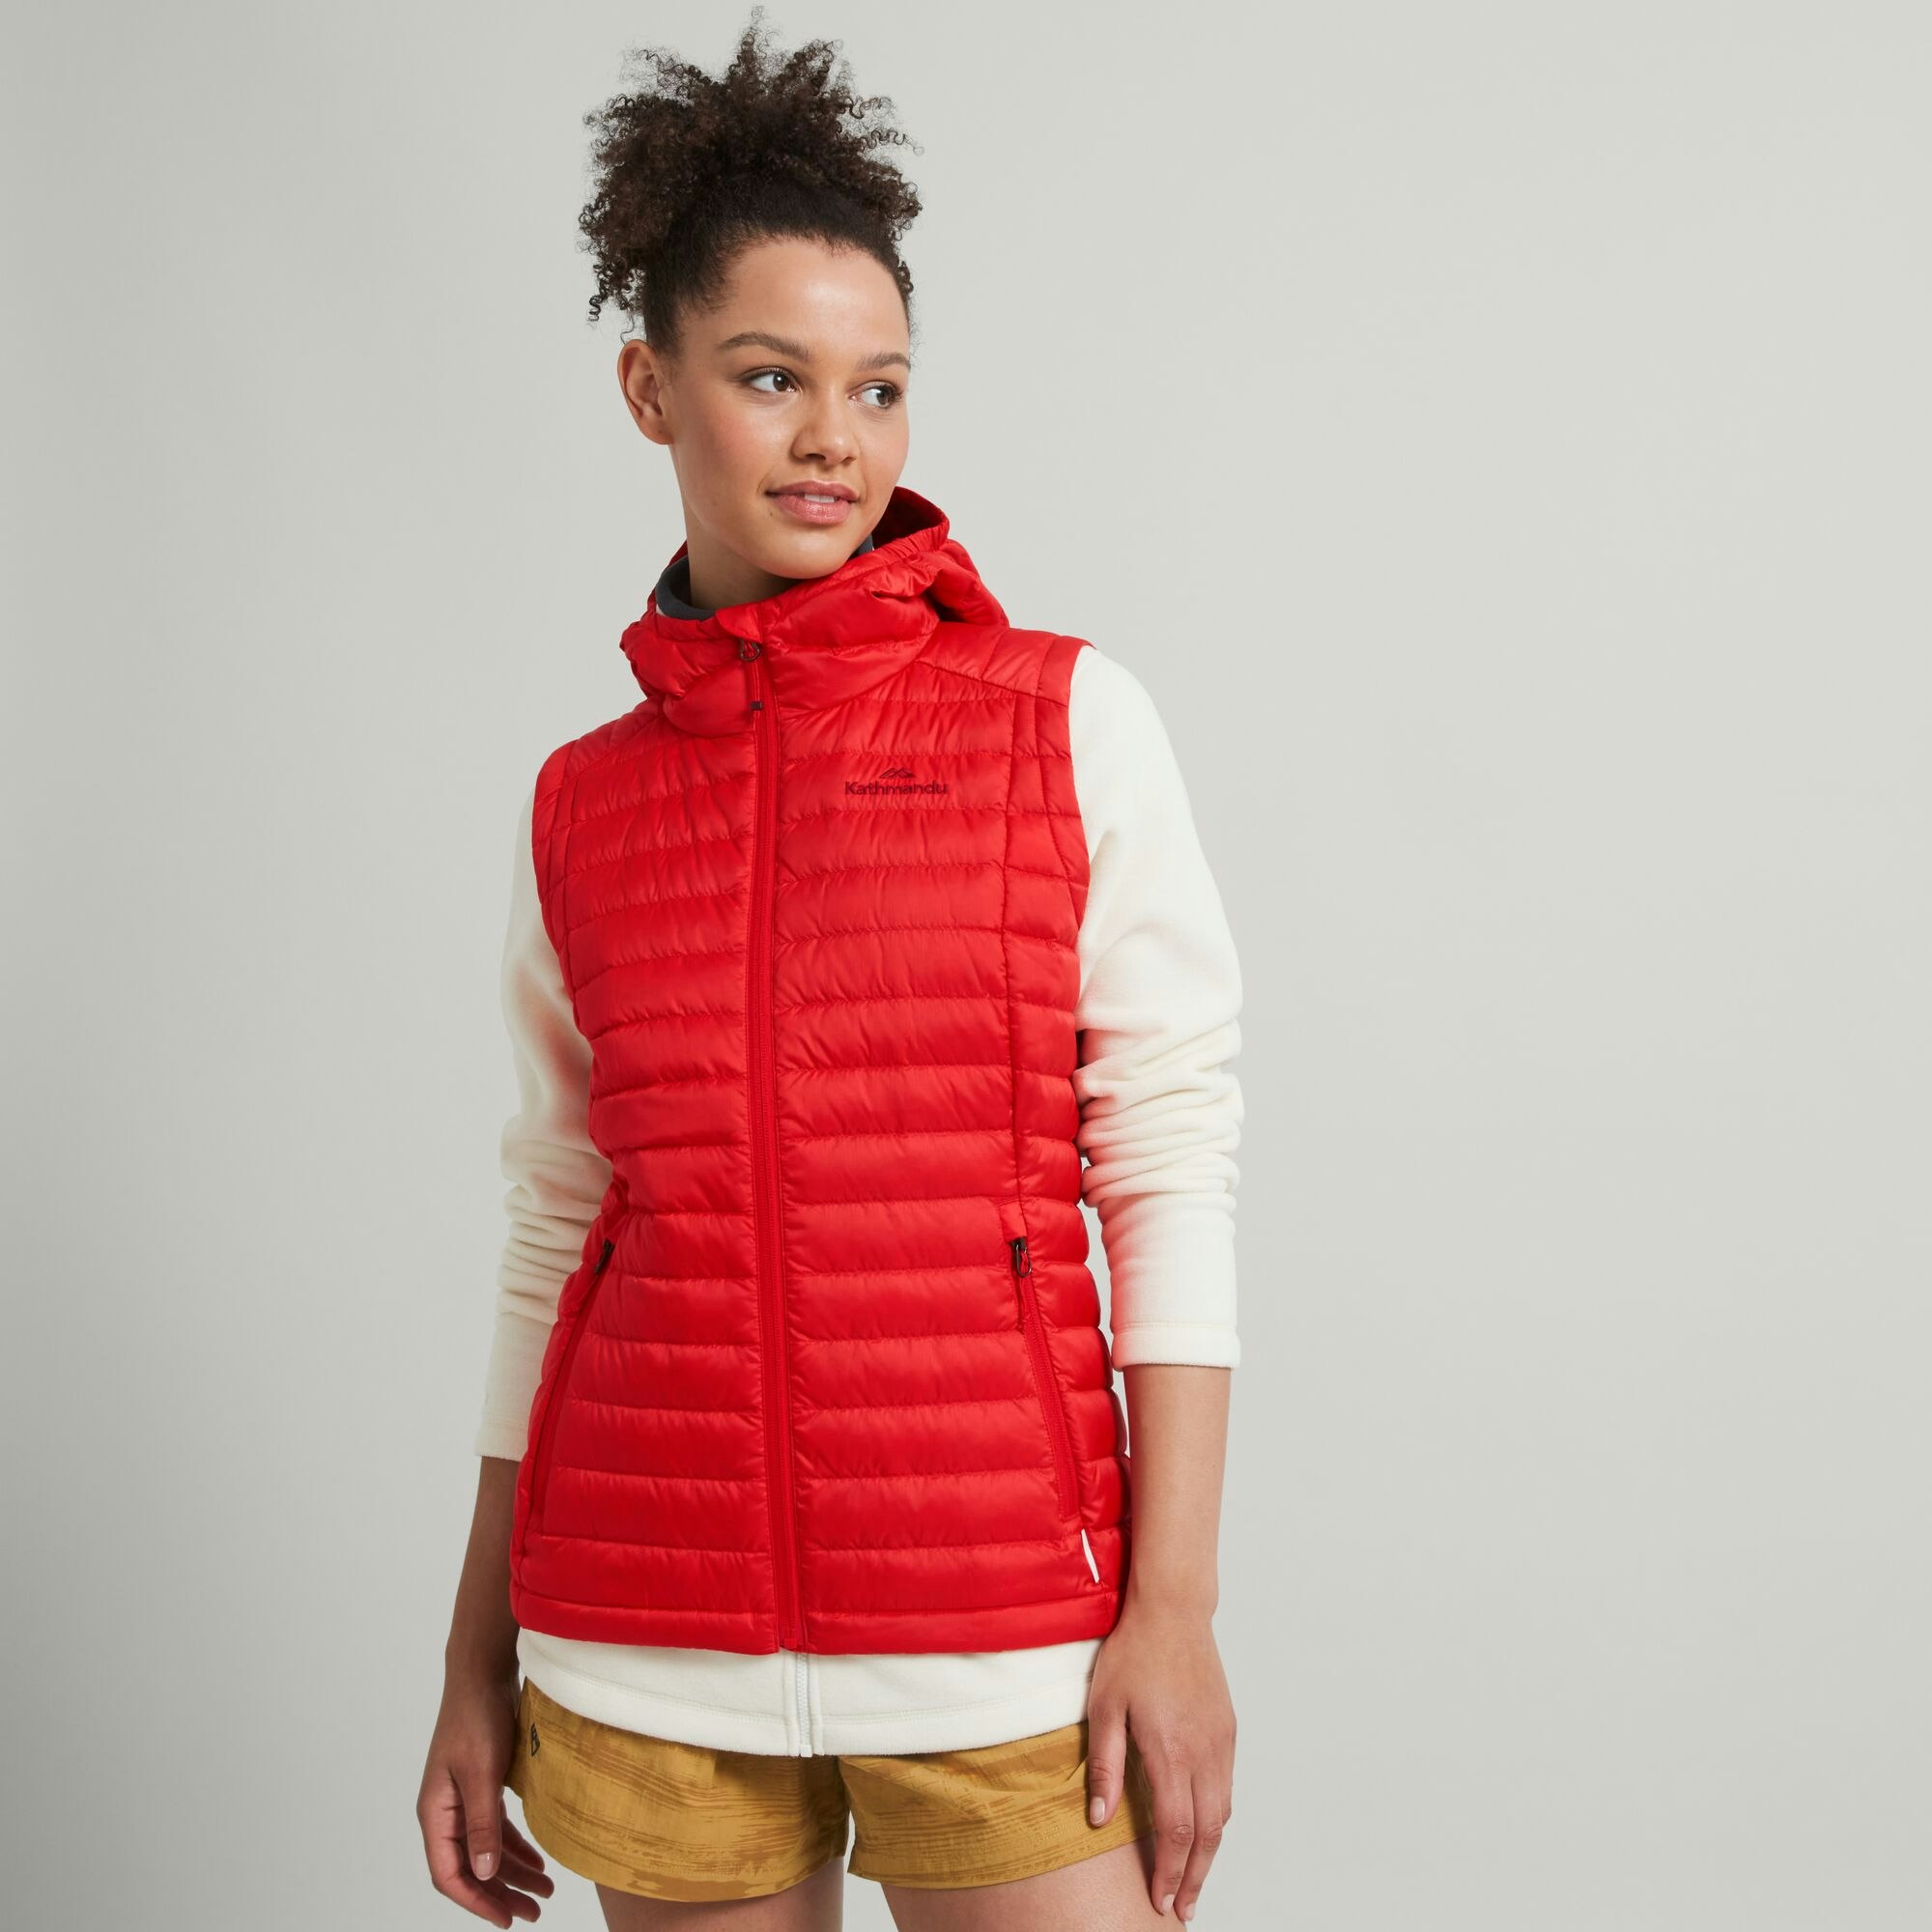 13 Best Puffer Vests for Women - Women's Winter Vests